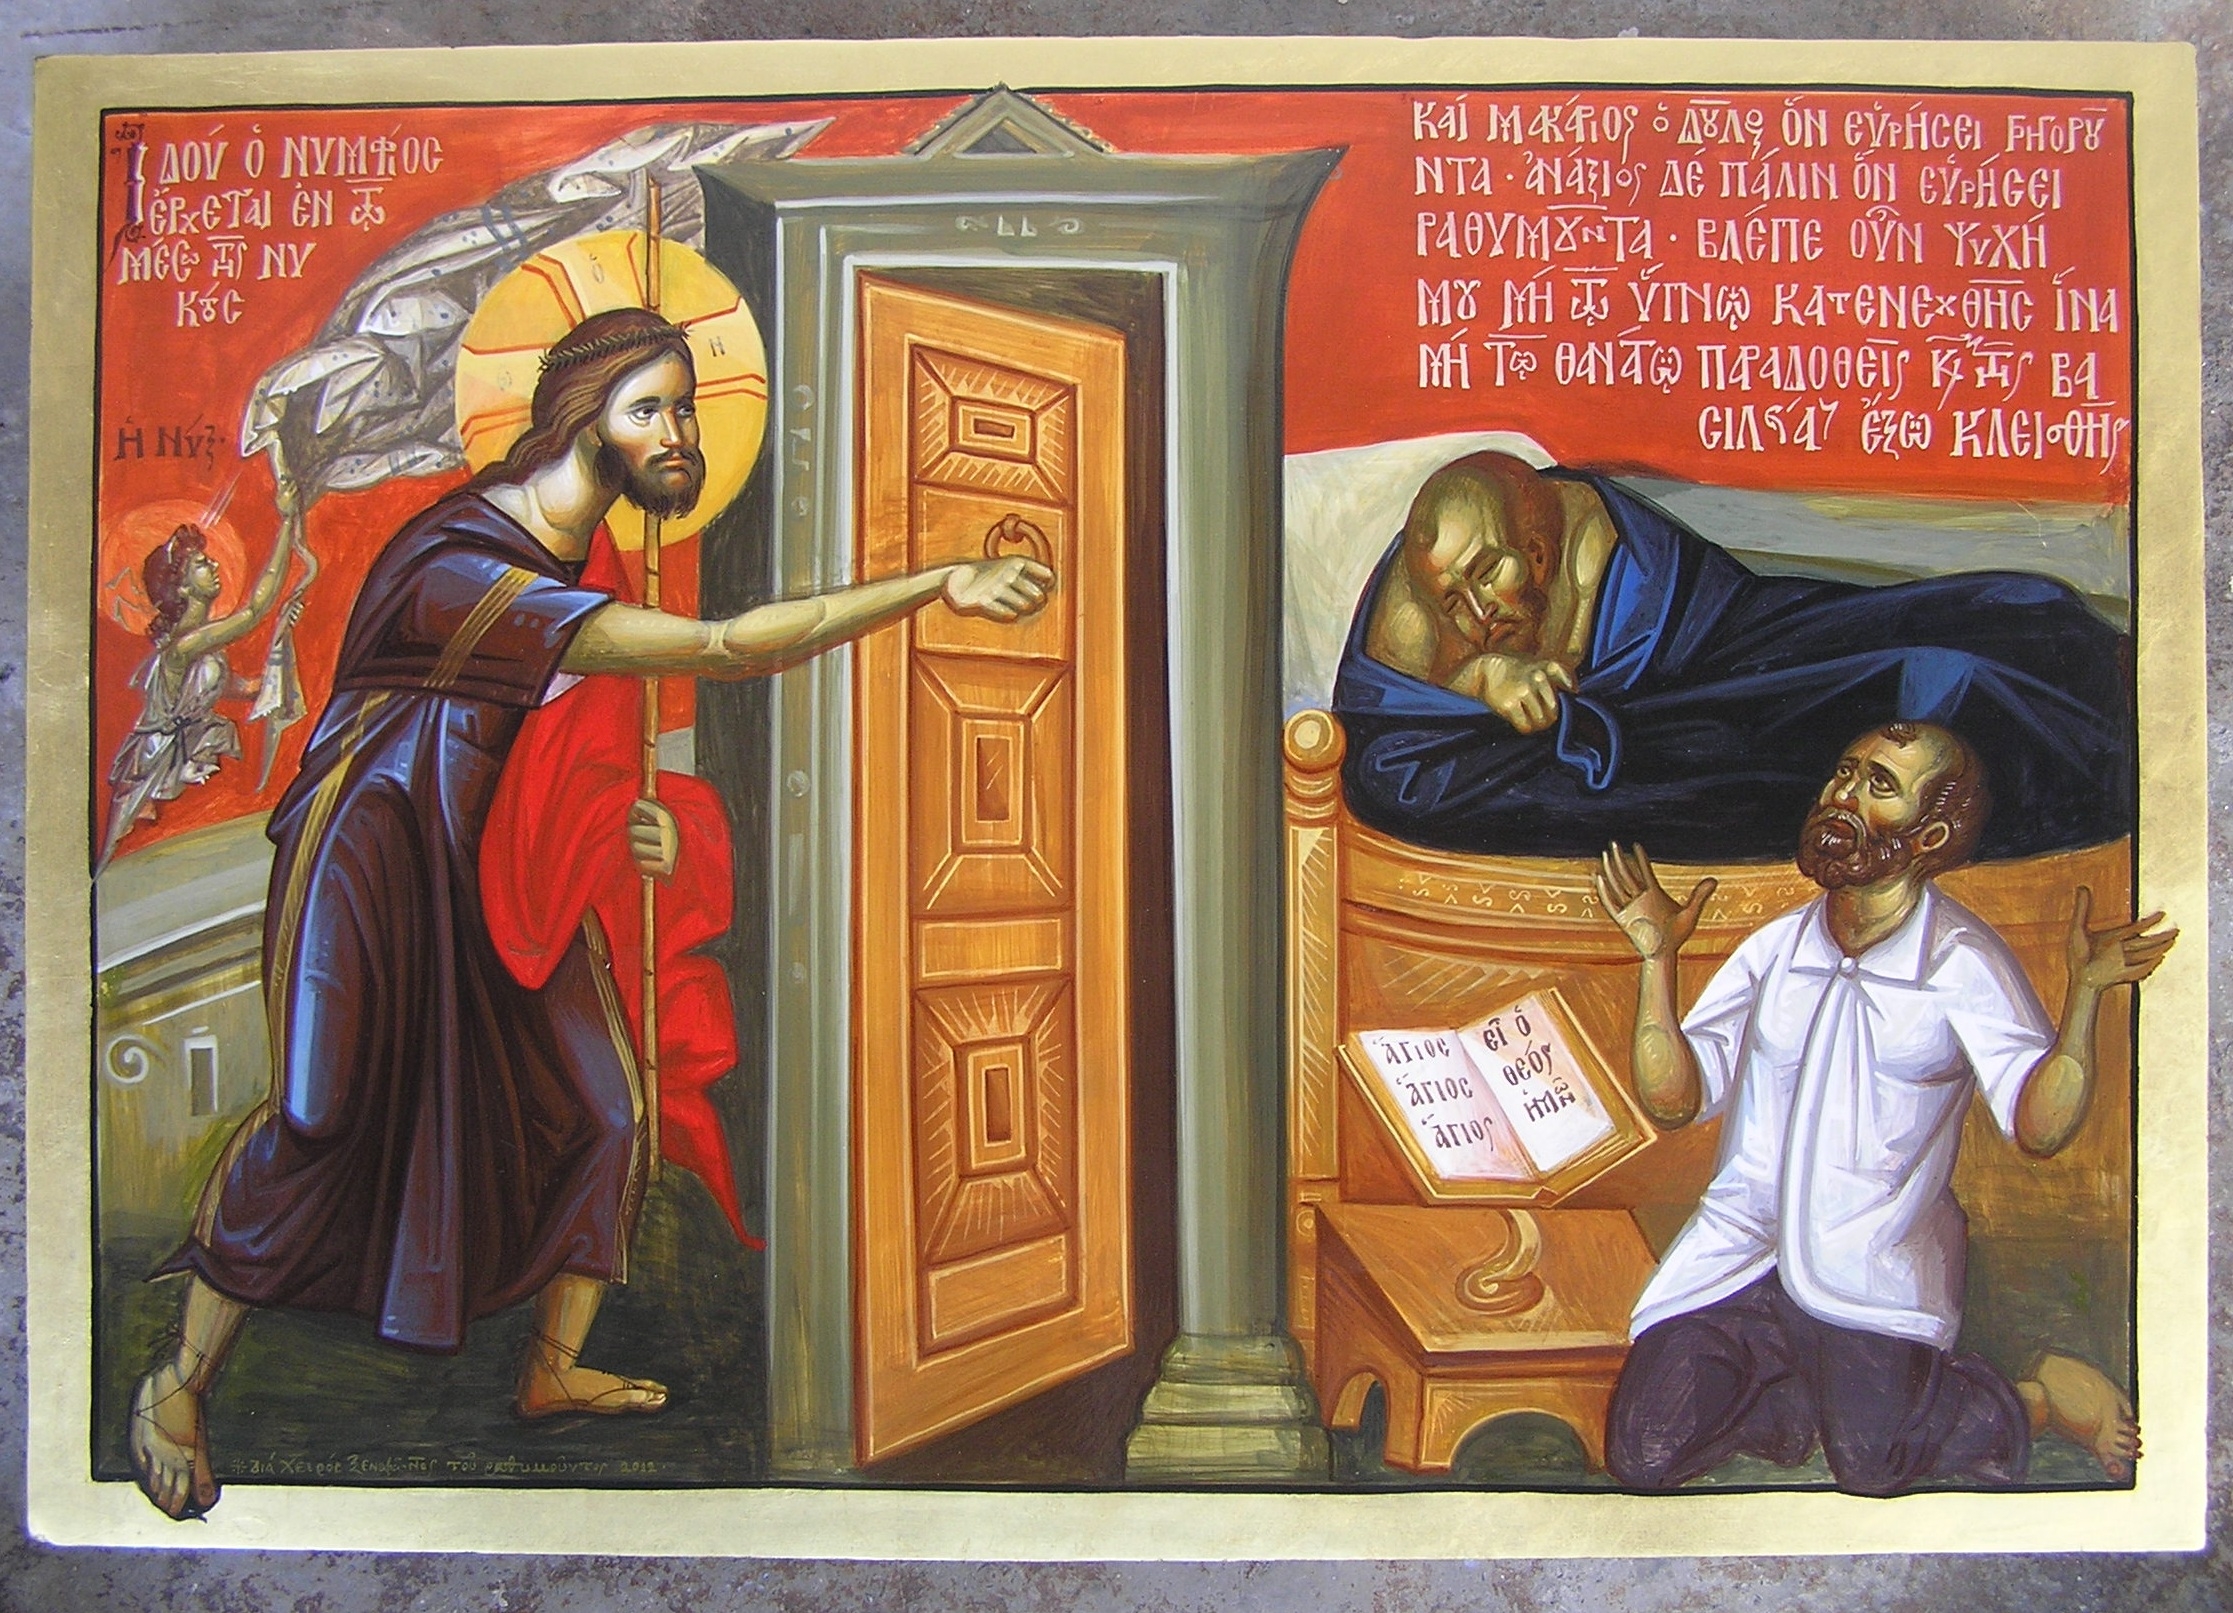 Песня в дверь твою стучался. Христос стучится в дверь. Иисус Христос стучится в дверь икона. Христос у двери. Господь стучится в дверь икона.